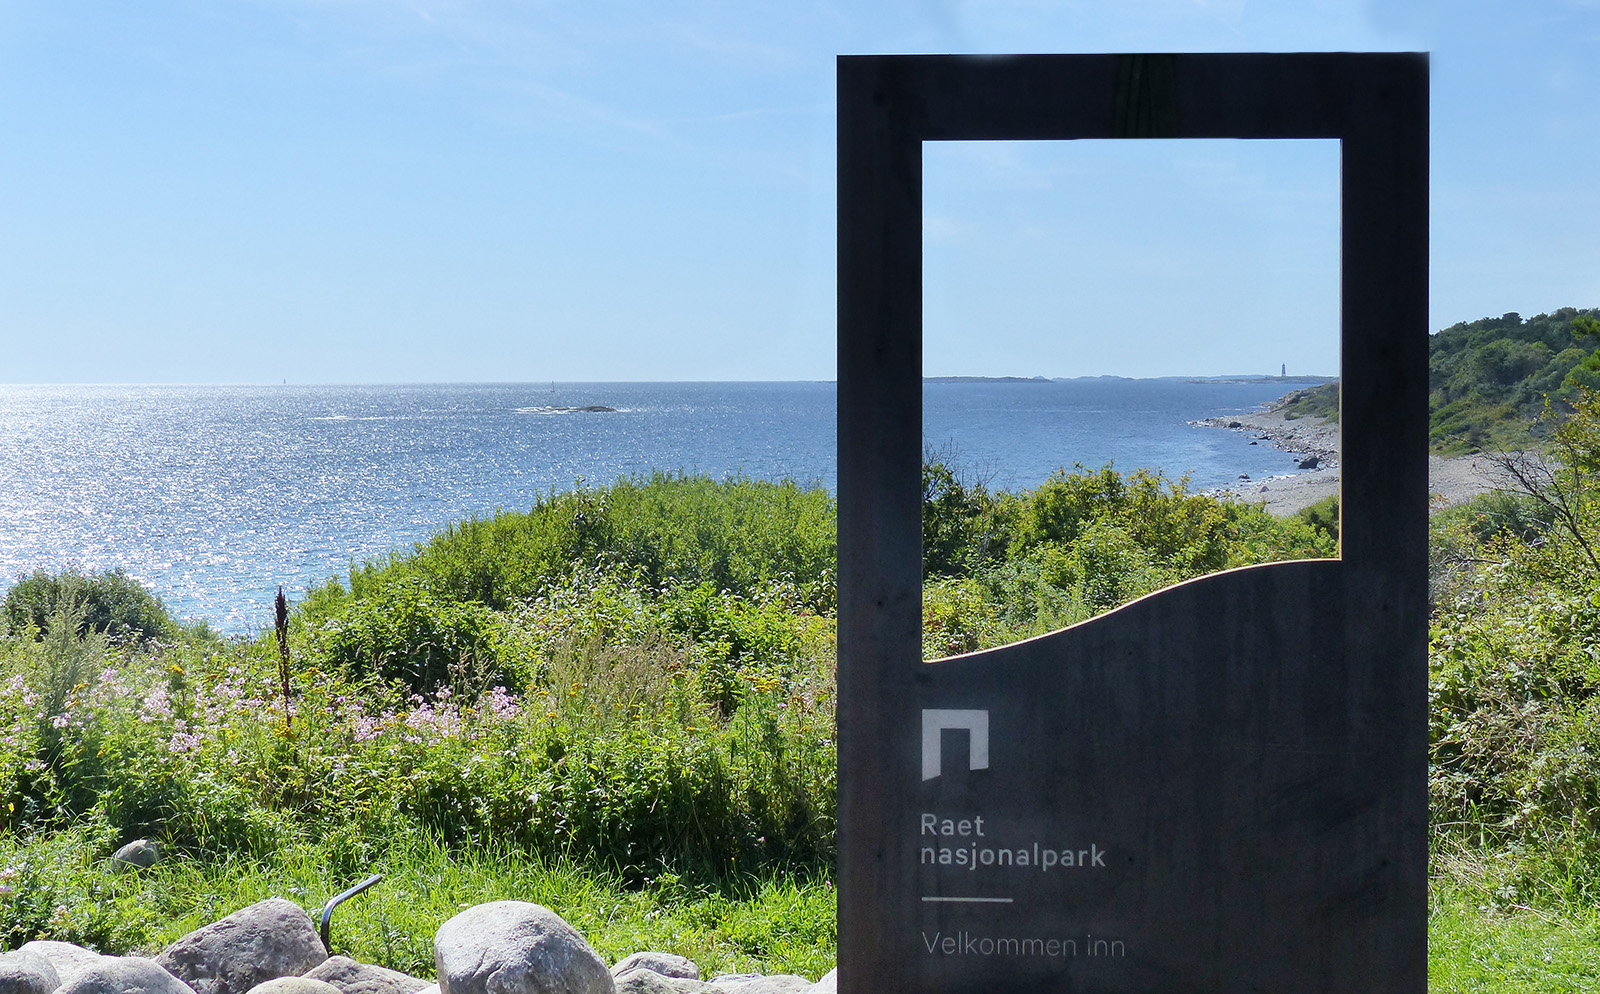 Portalen er et ledd i merkevarestrategien til Norges nasjonalparker, og på Spornes er den plassert helt i tråd med hensikten. Den rammer inn noe av nasjonalparkens kvaliteter og ønsker besøkende velkommen inn i nasjonalparken